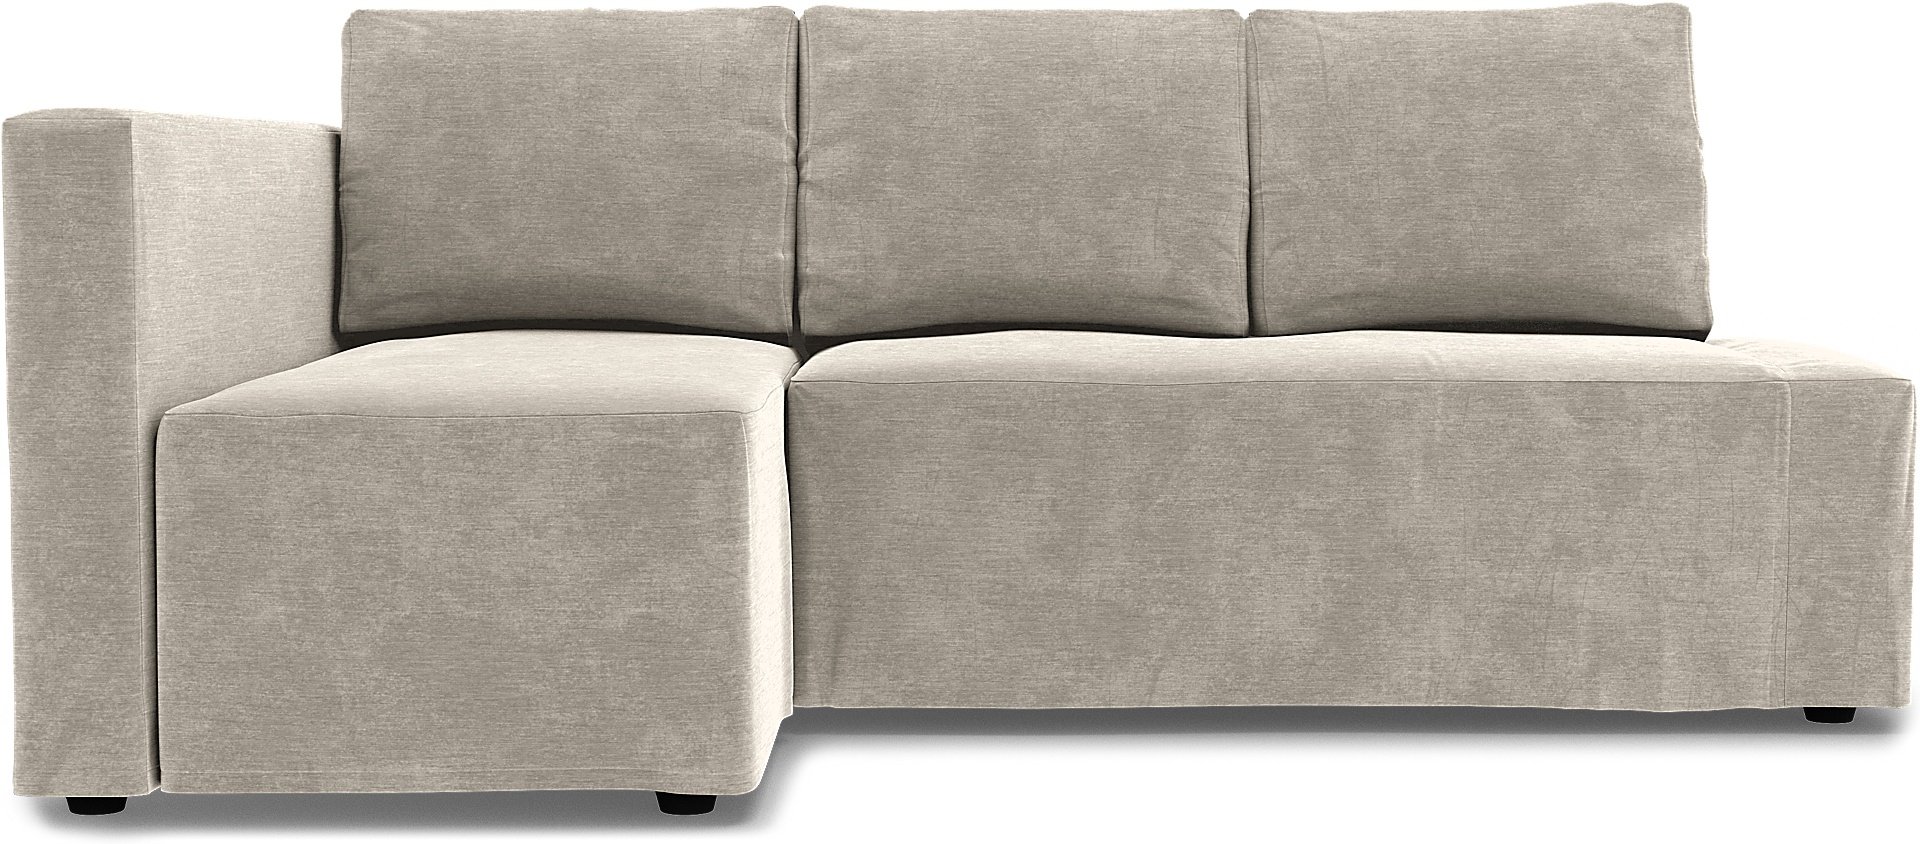 IKEA - Friheten Sofa Bed with Left Chaise Cover, Natural White, Velvet - Bemz